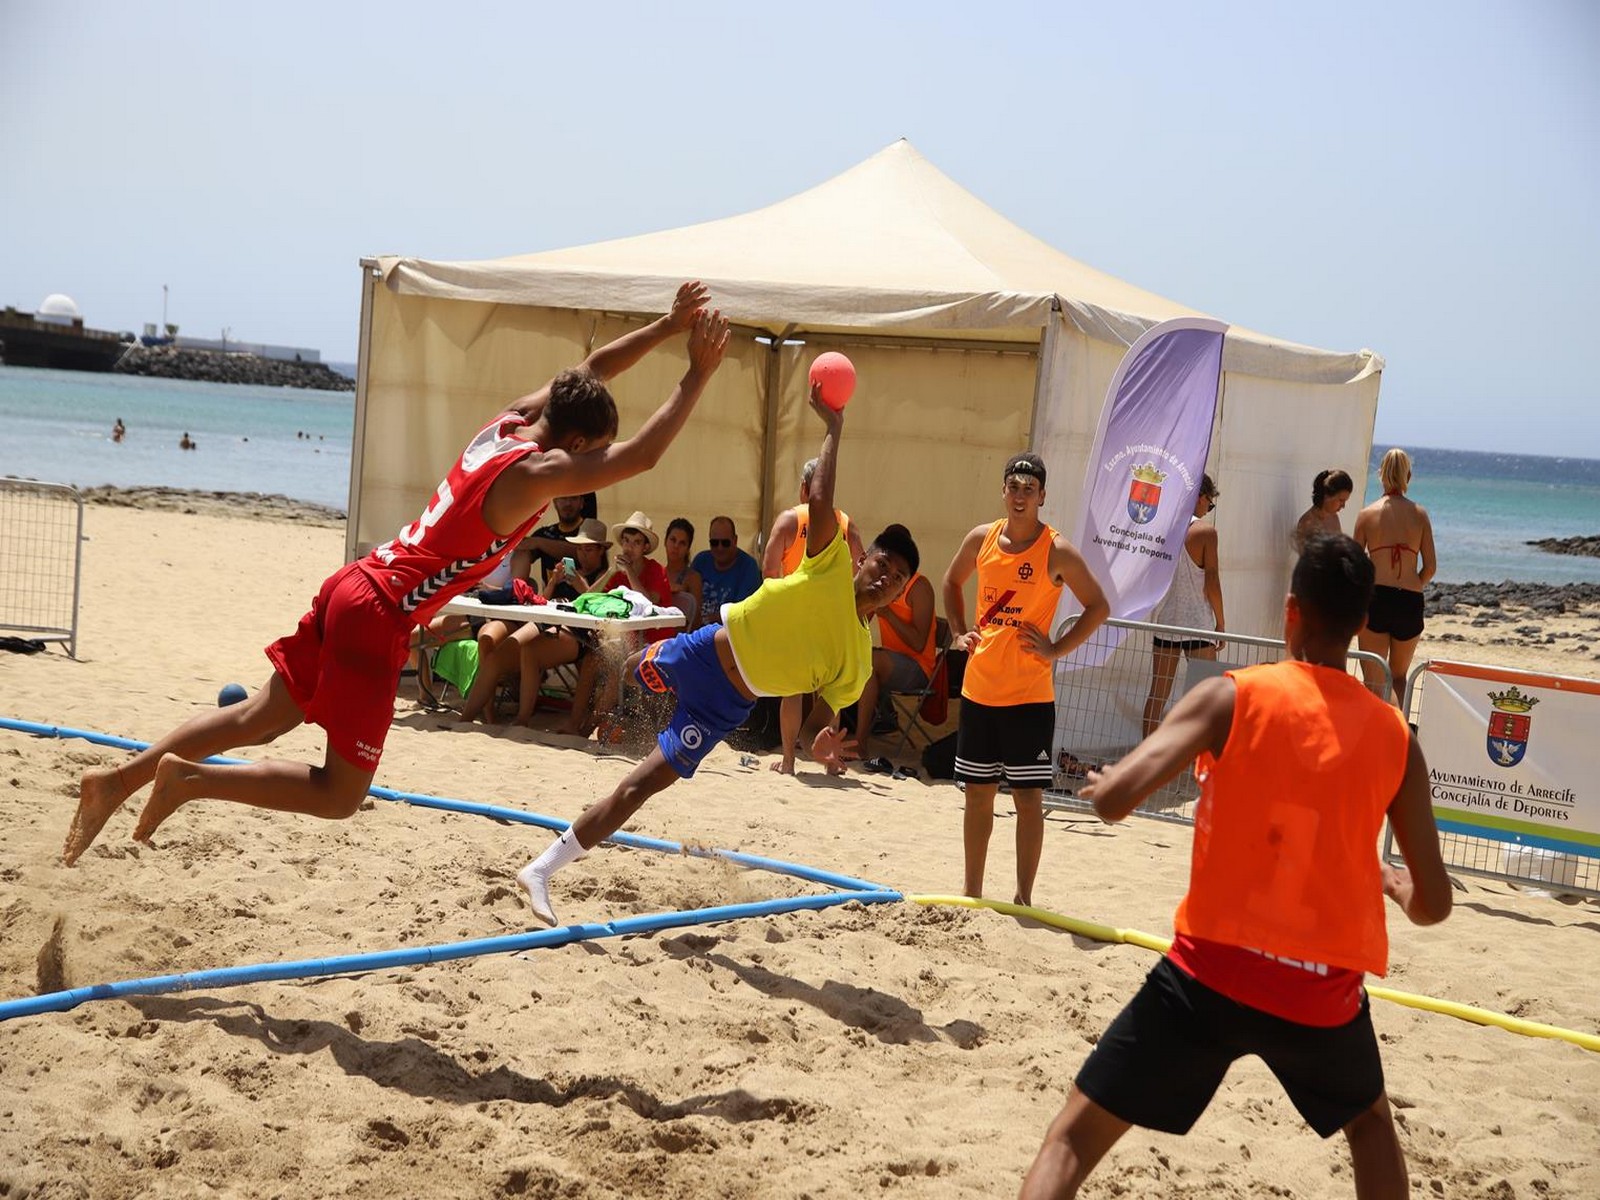 Torneo de Balonmano Playa Ciudad de Arrecife / CanariasNoticias.es